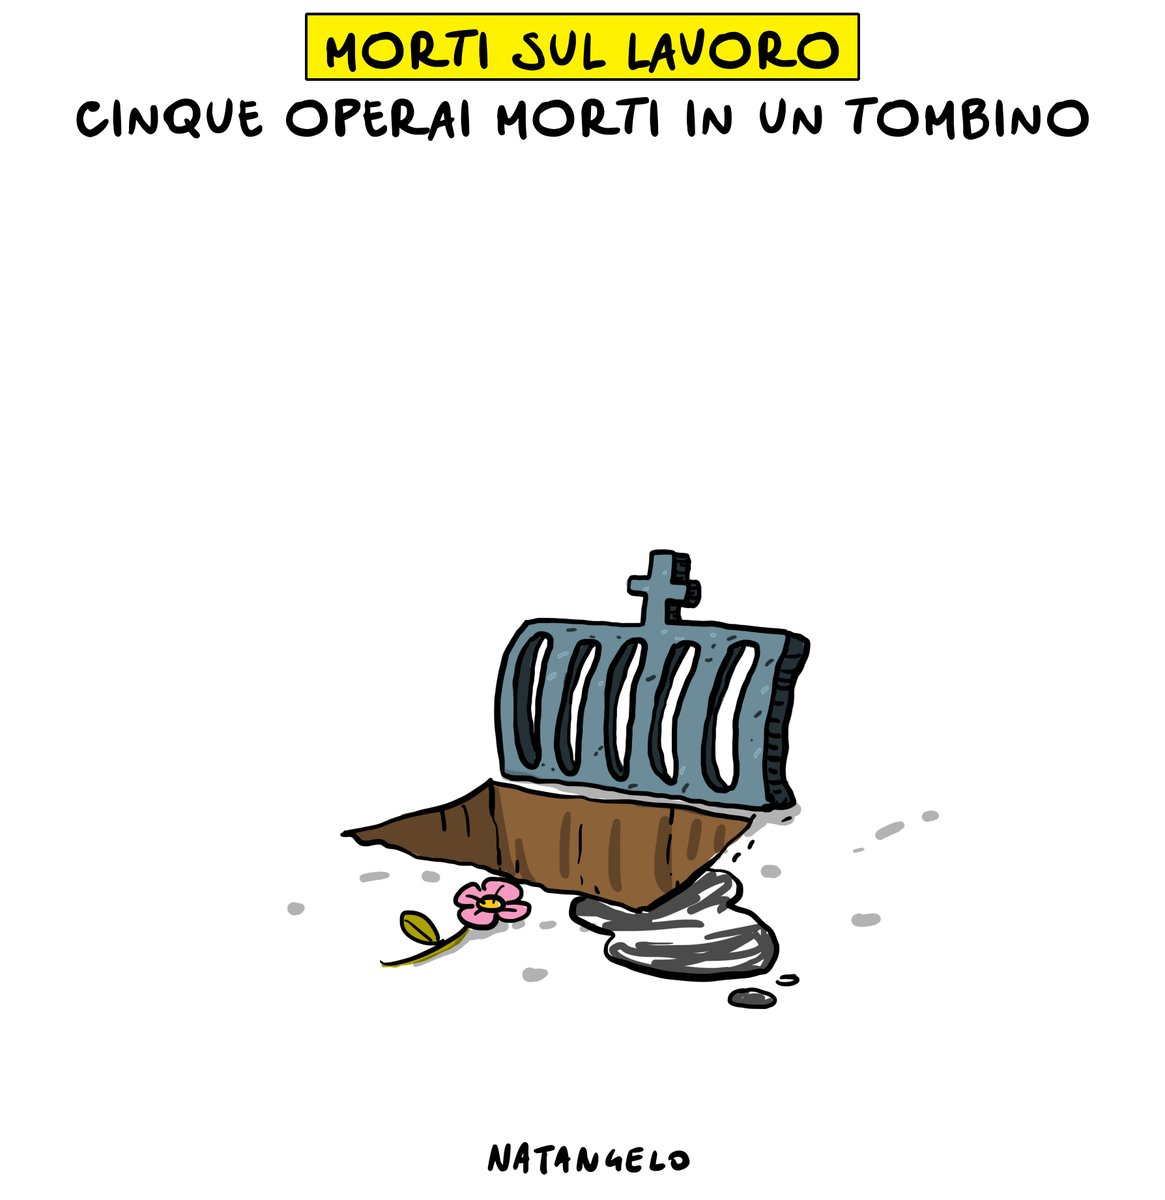 Continua la strage

#mortisullavoro #Casteldaccia #vignetta #fumetto #satira #natangelo